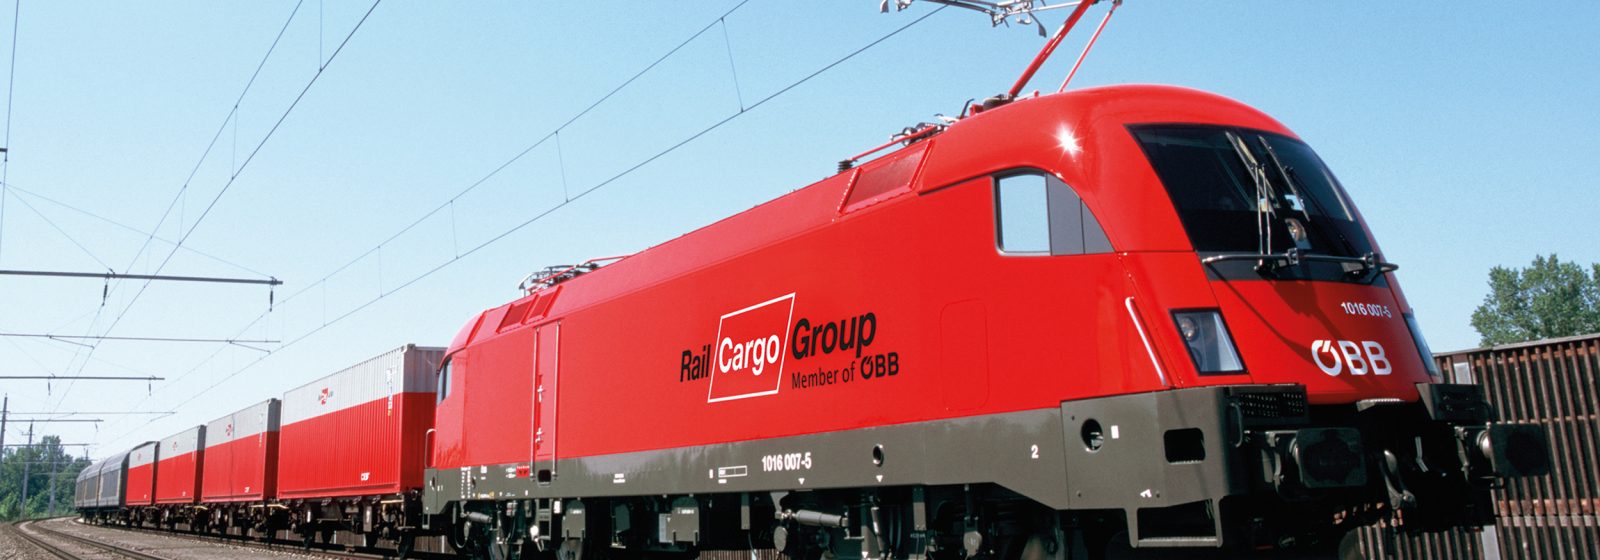 202208 Rail Cargo Group containertrein